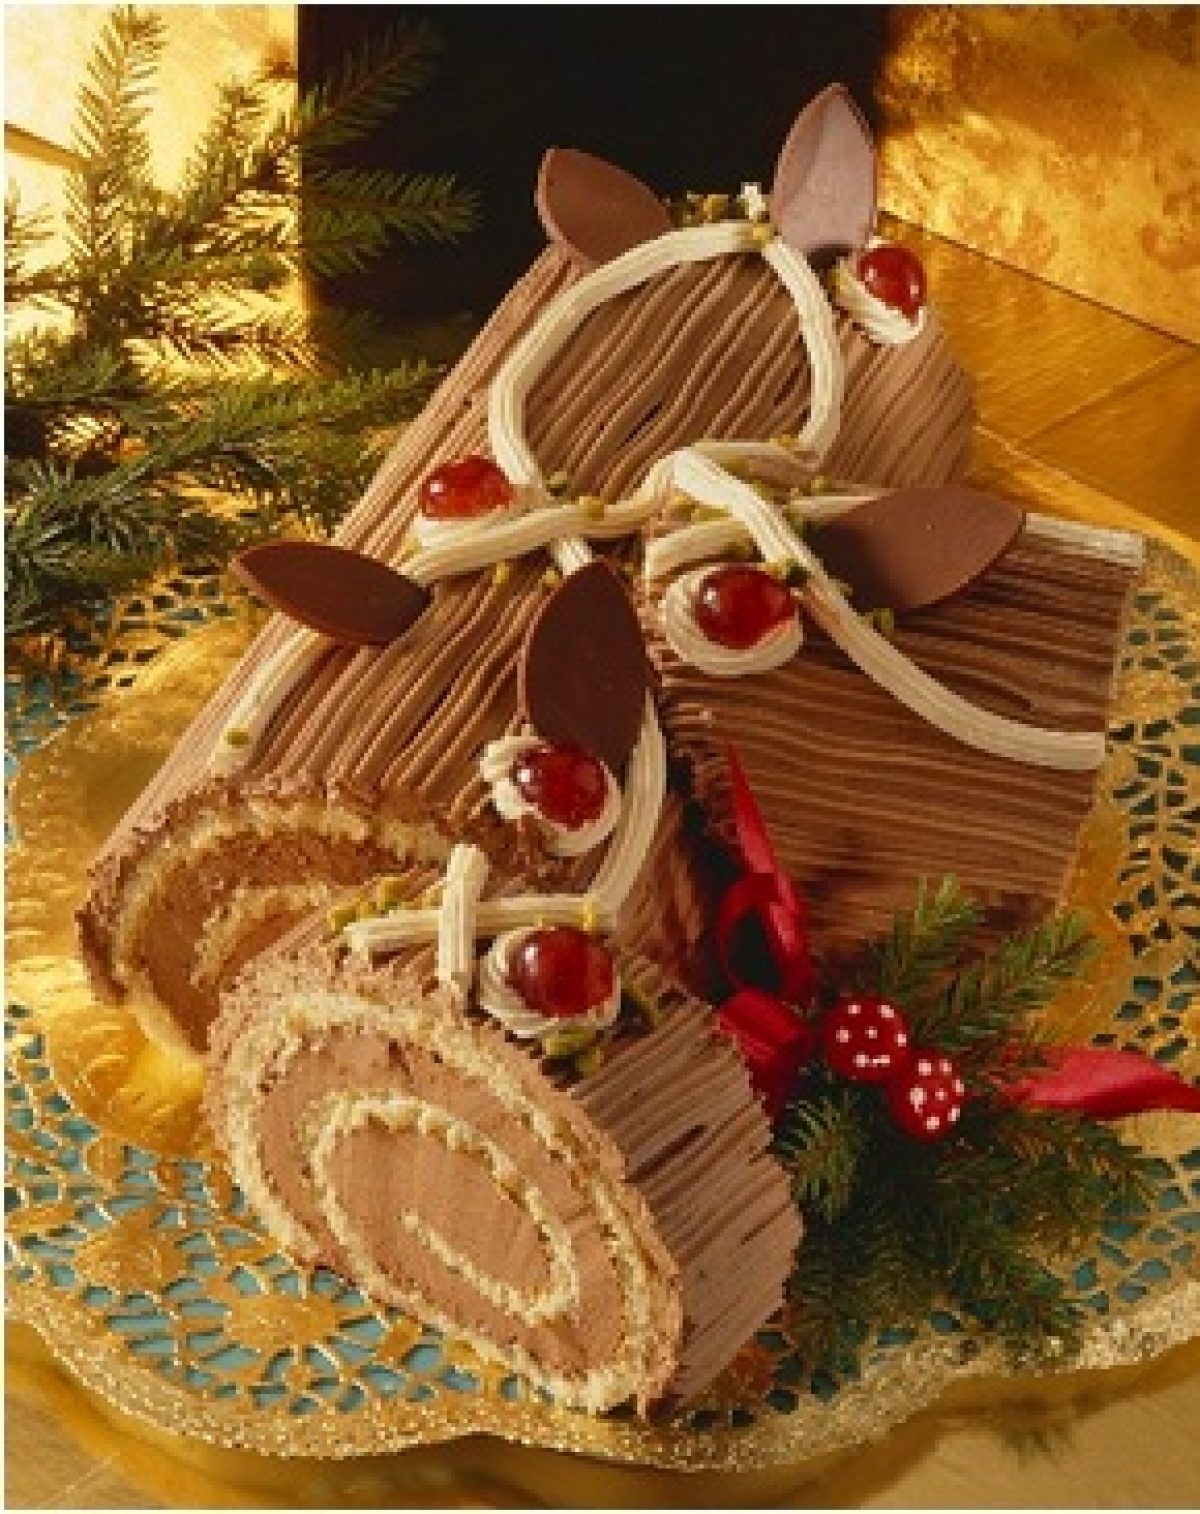 Ricetta Bimby Tronchetto Di Natale.Tronchetto Di Cioccolato Pourfemme